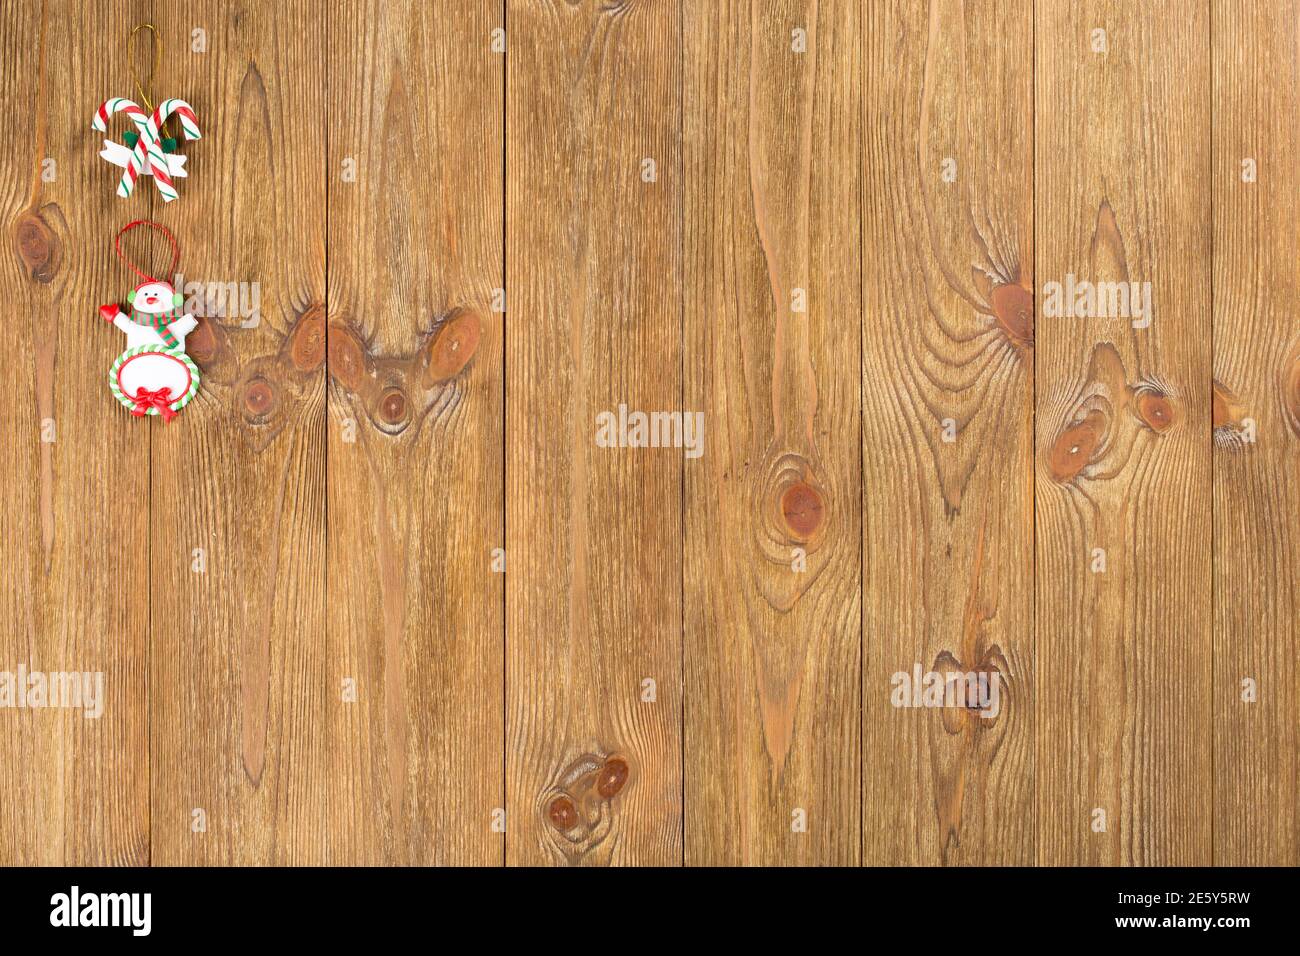 Il giocattolo di Natale si trova su una superficie di legno. Questa immagine può essere utilizzata come sfondo. Primo piano. Foto Stock